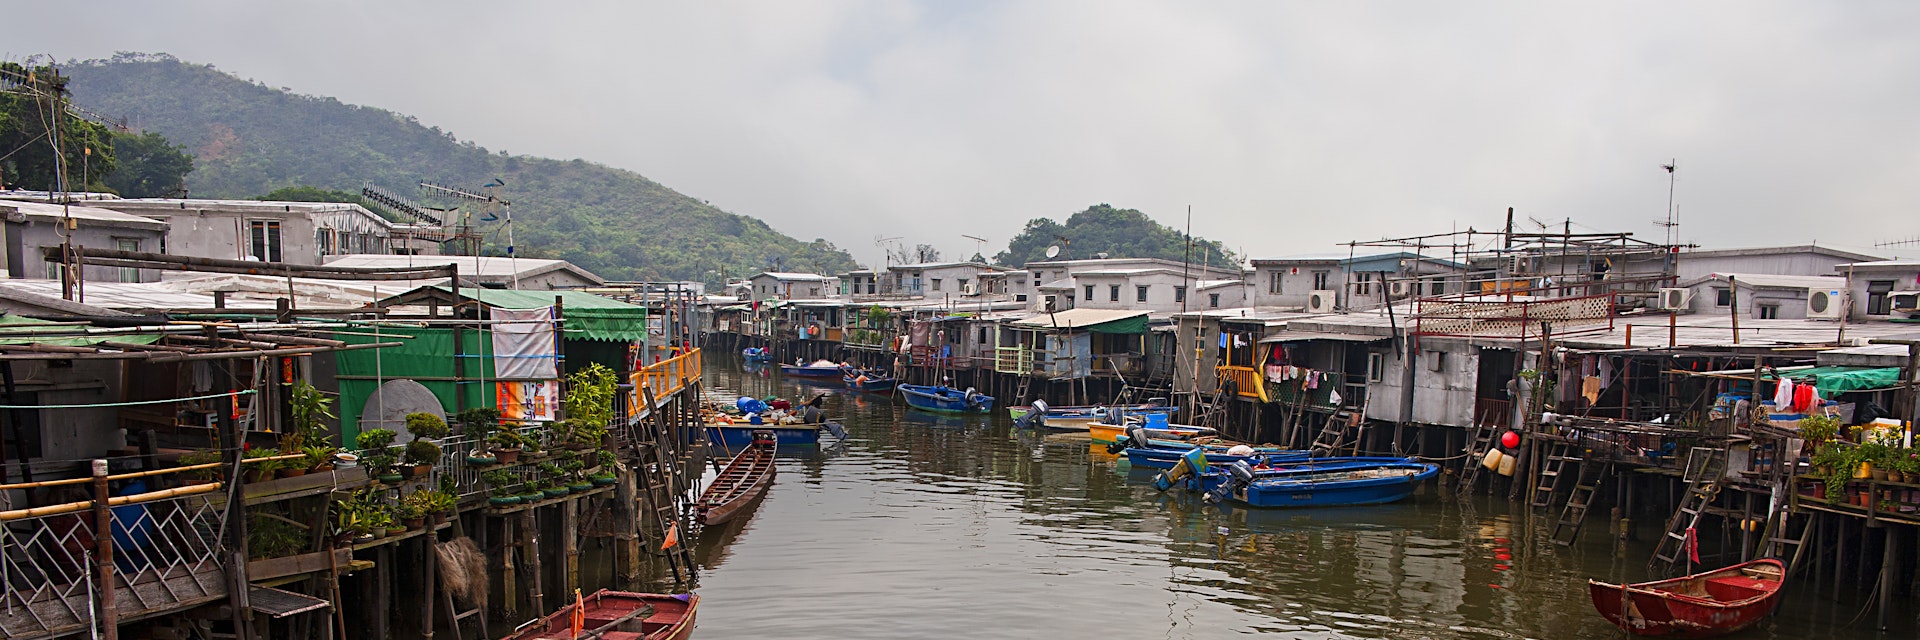 Tai O Fishing Village @ Hong Kong_1821